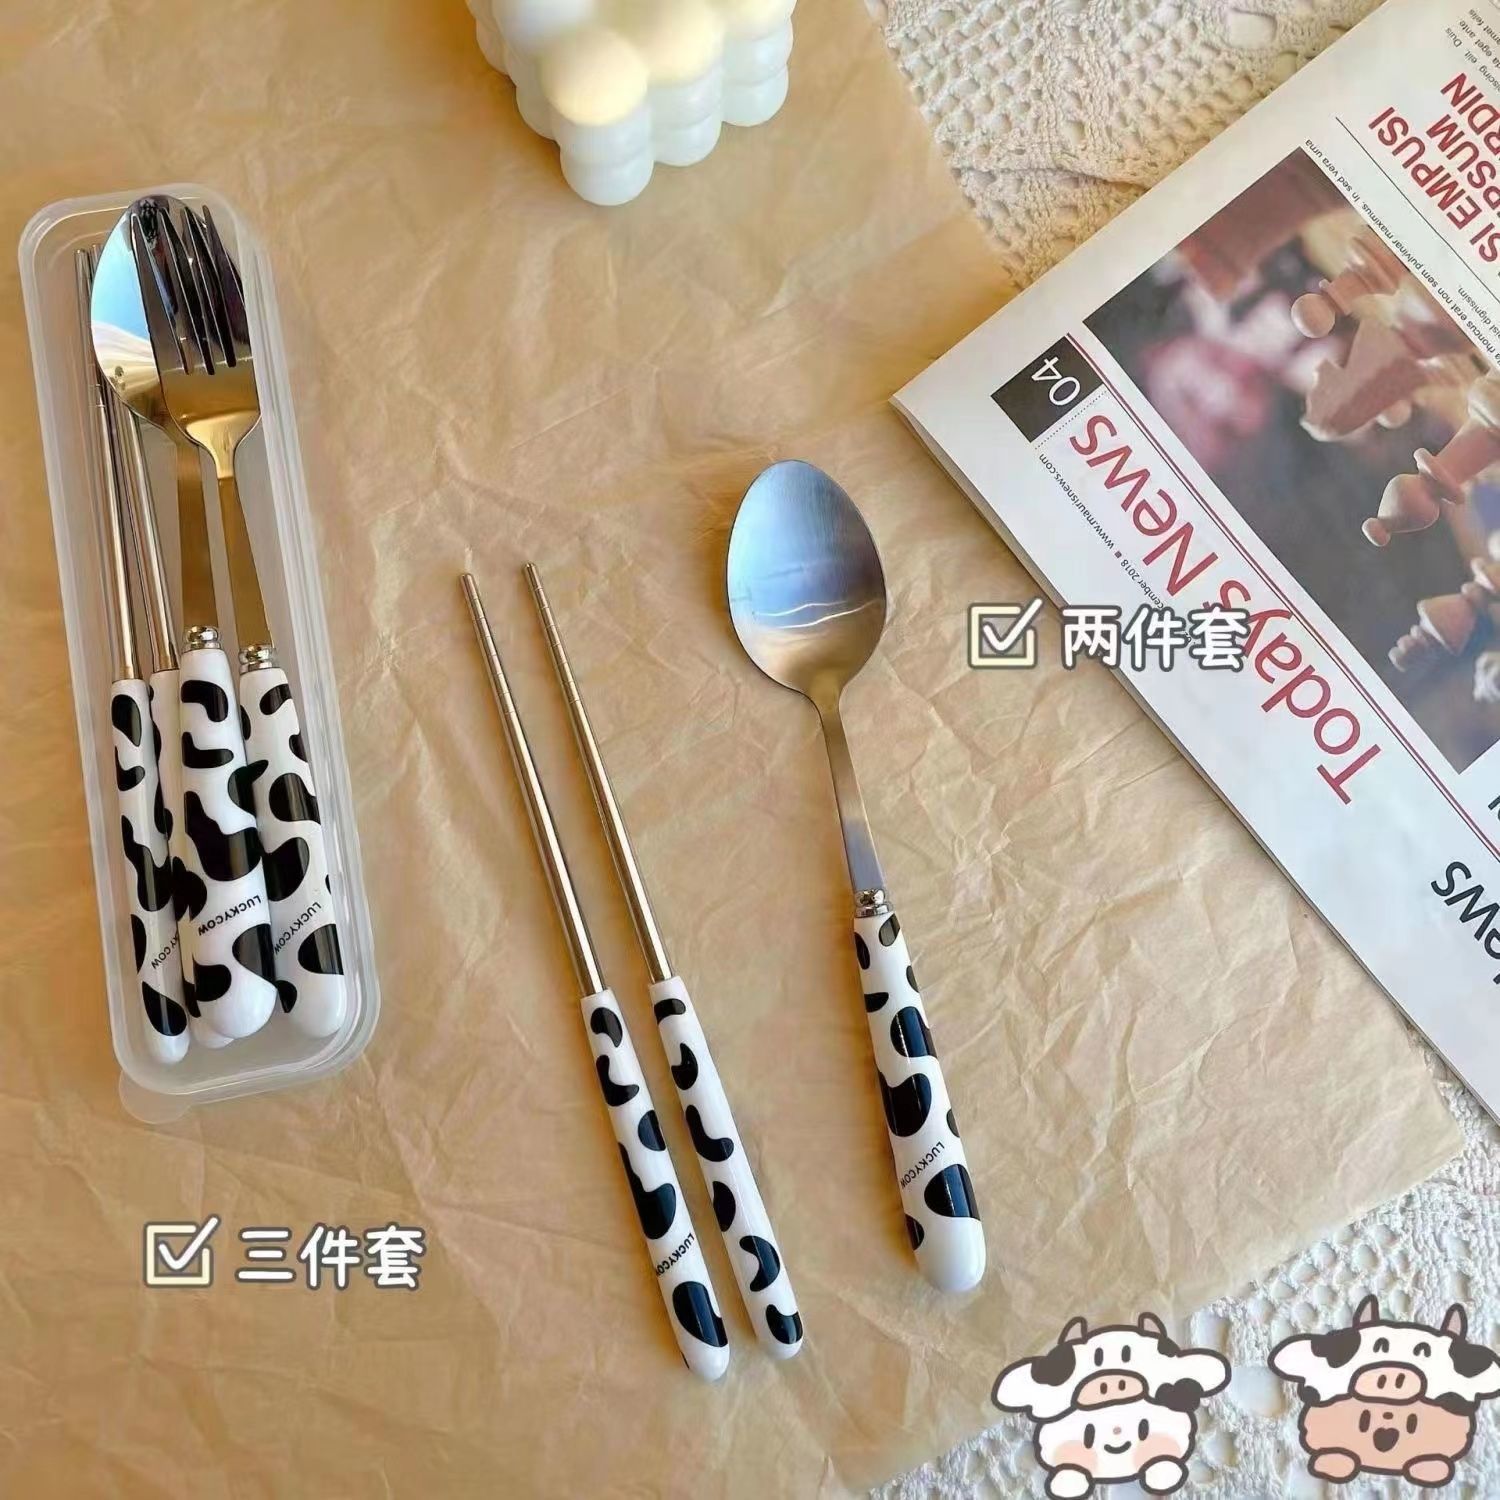 不锈钢勺子叉子筷子三件套儿童卡通网红ing便携式学生韩式餐具